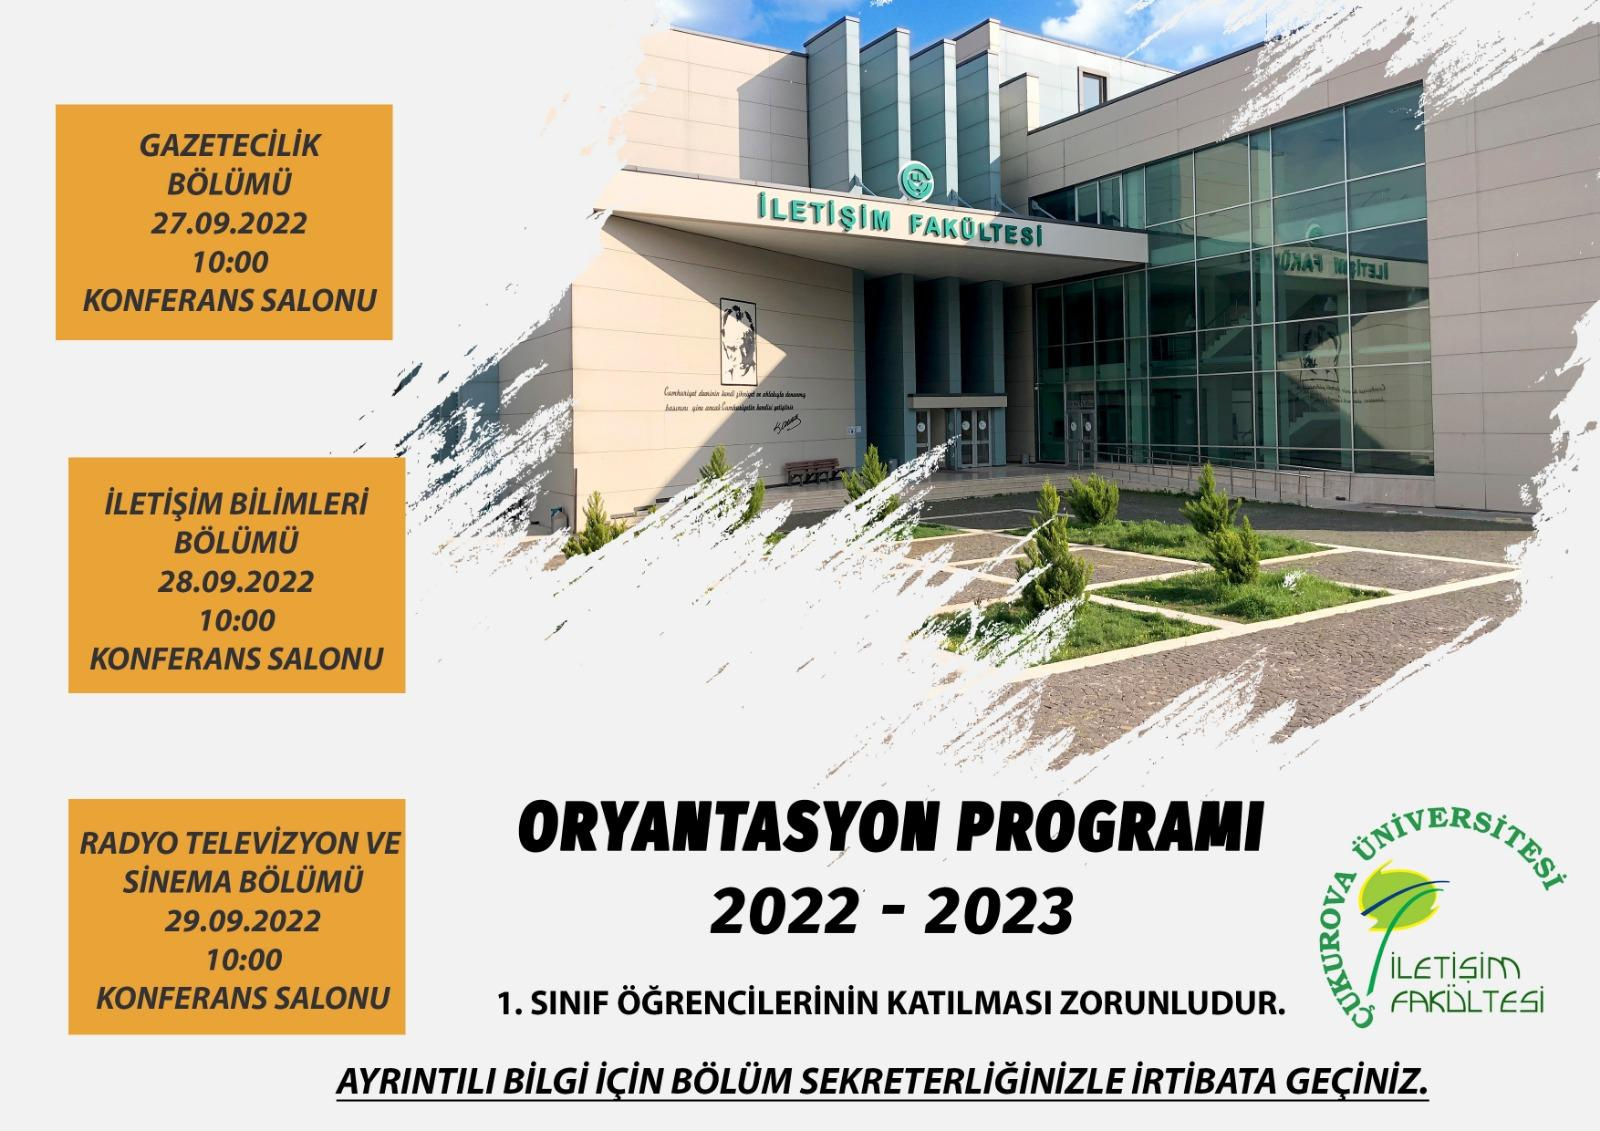 2022 - 2023 Oryantasyon Programı